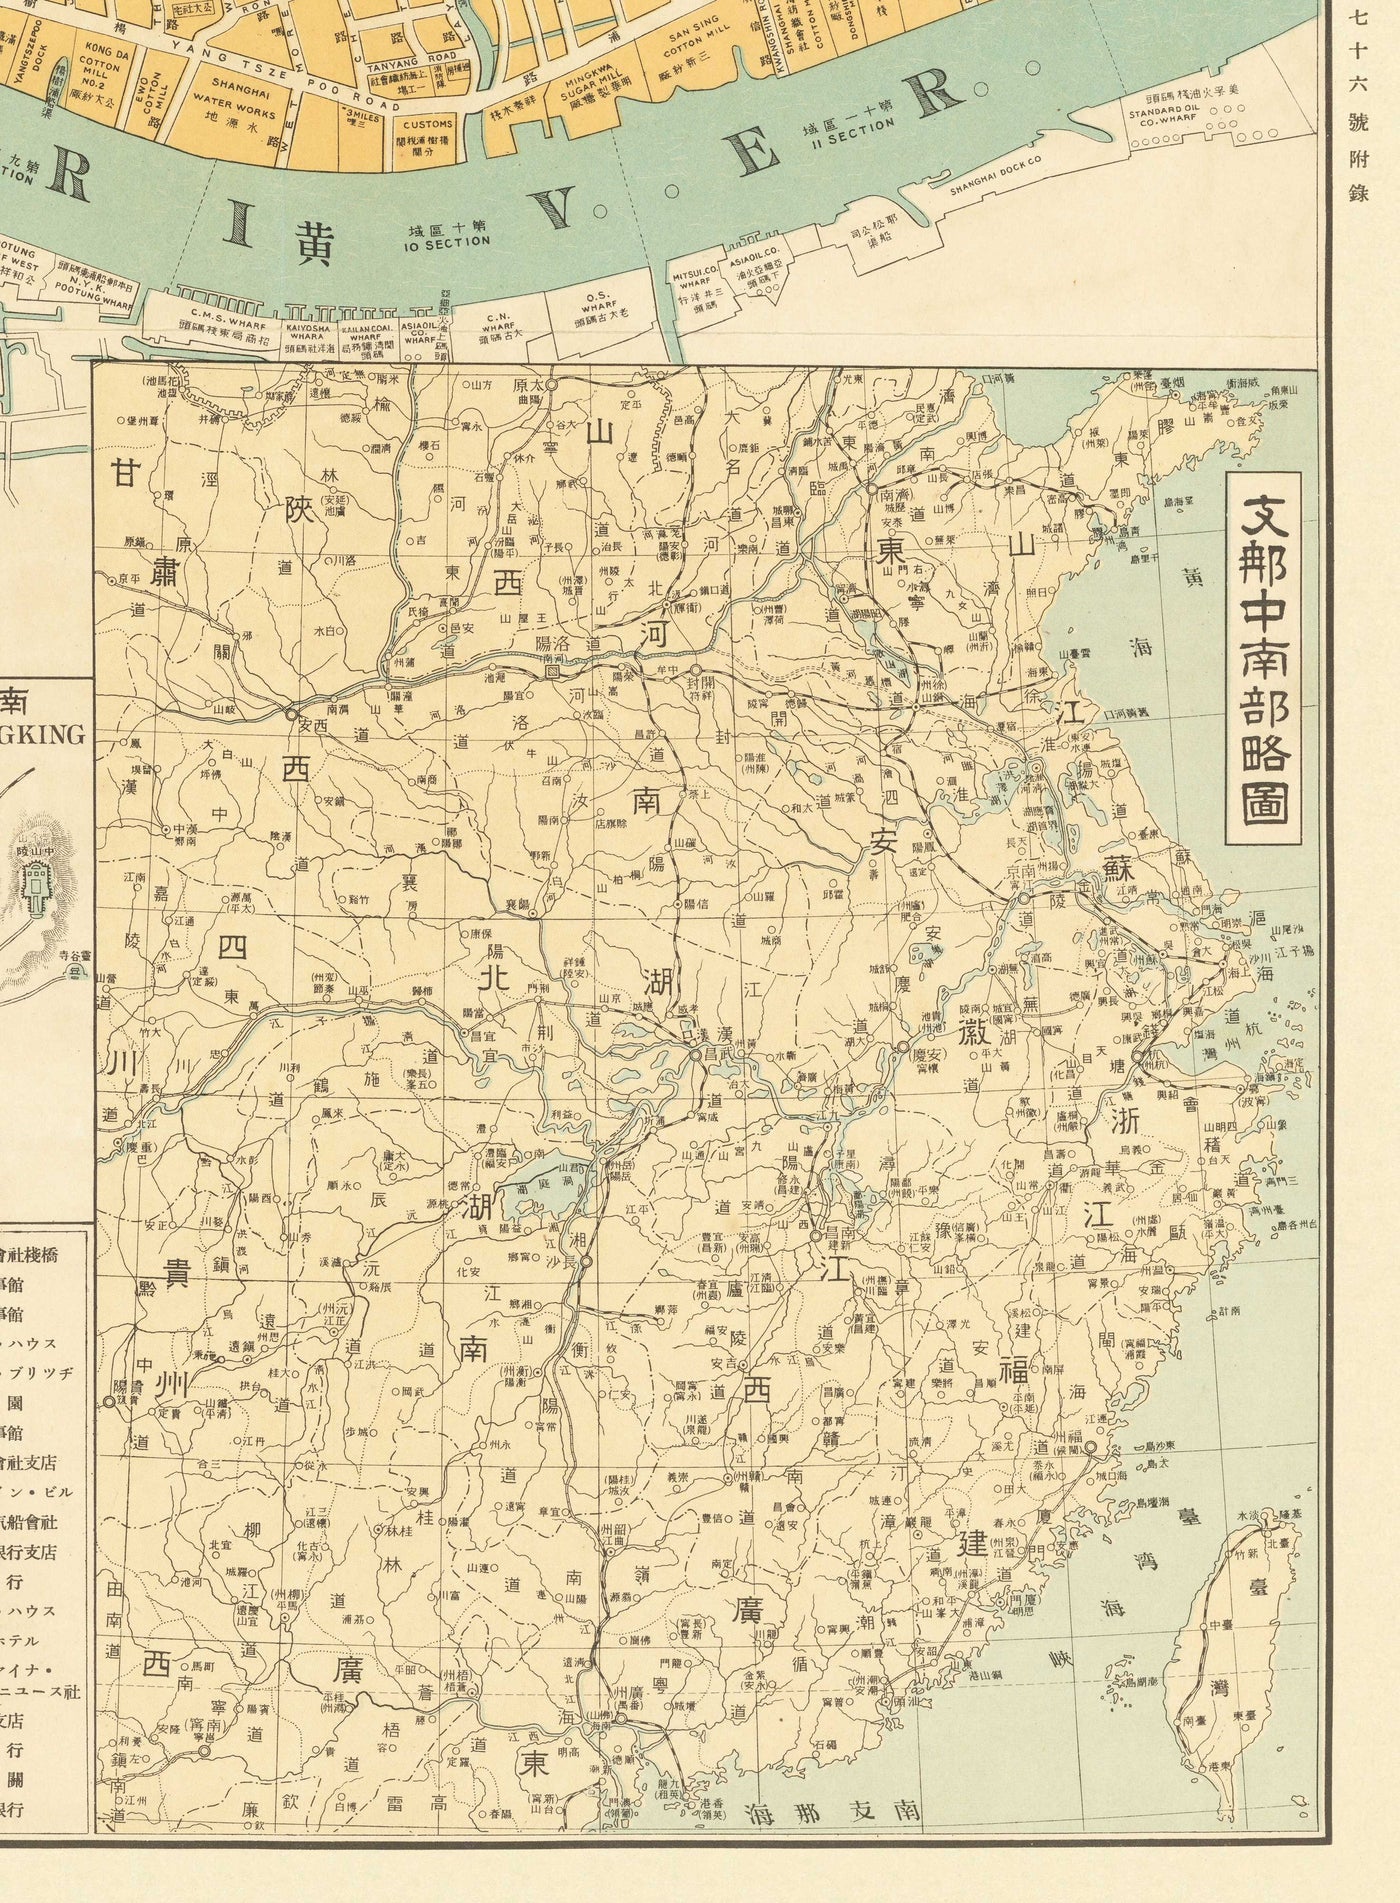 Mapa antiguo de Shanghai en 1935 por Osaka Daily News - Río Huangpu, distrito de Yangpu, Pudong, Lujiazui, Jing'an